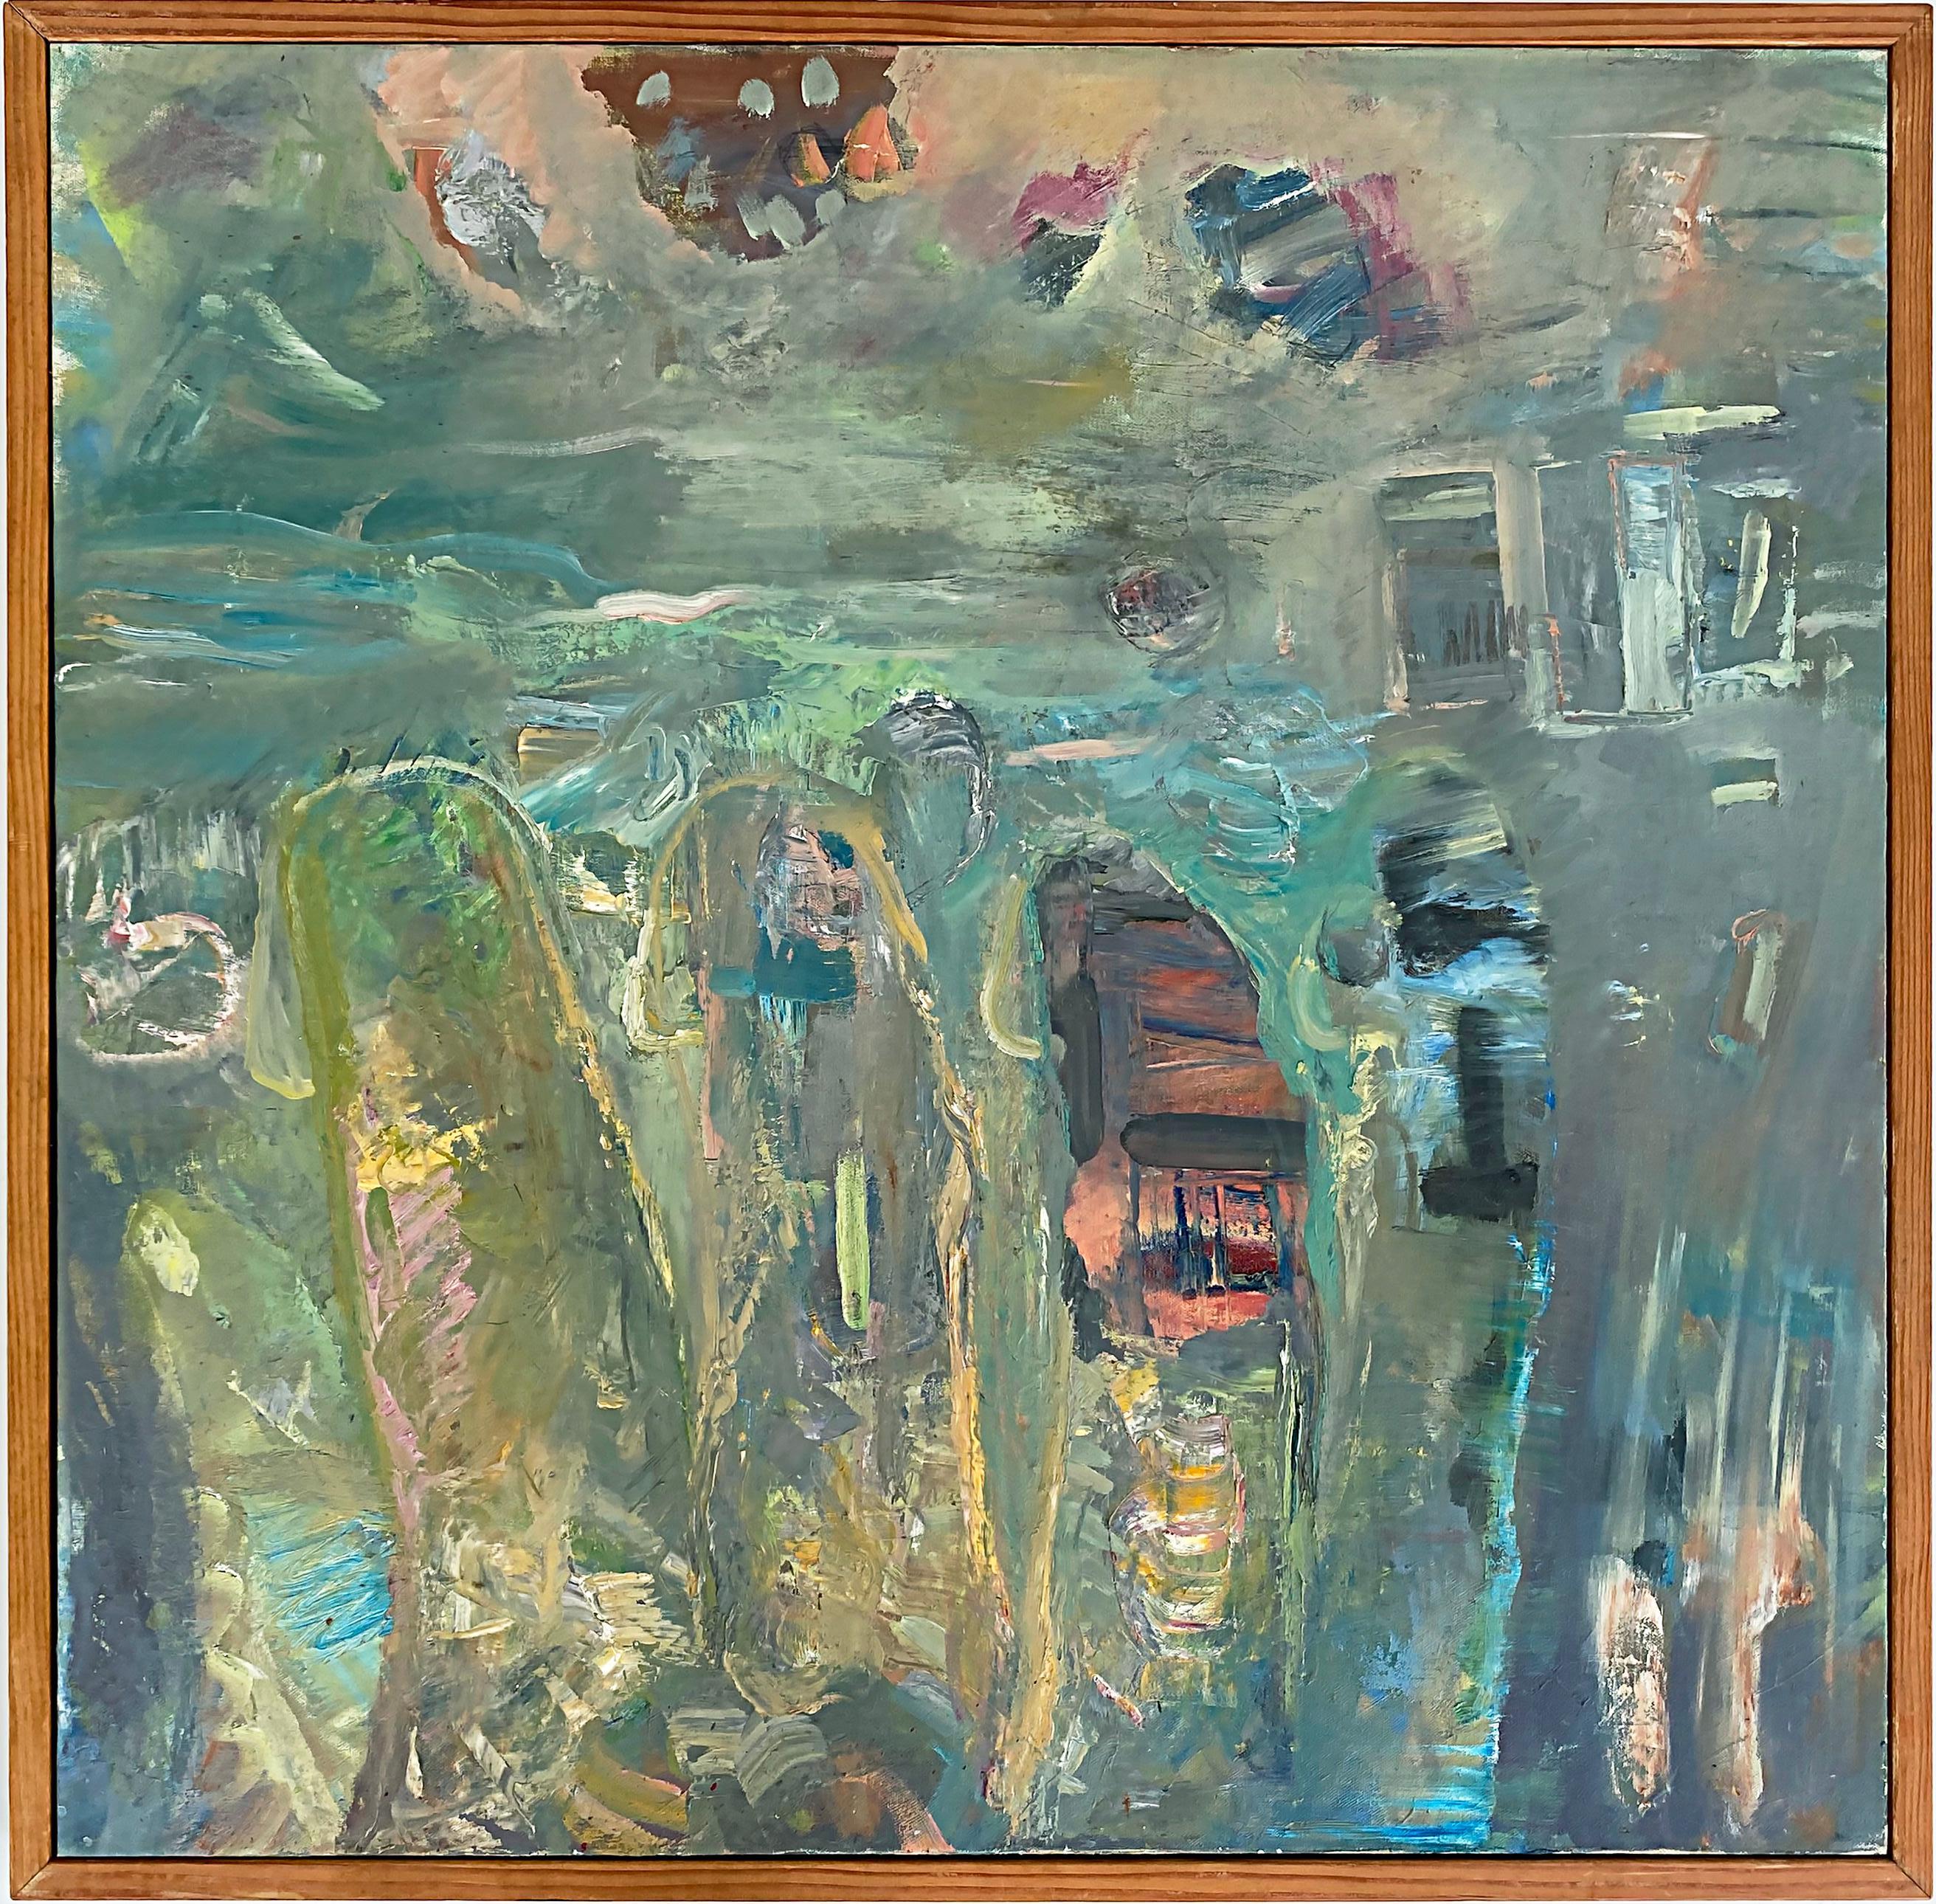 Vintage Warren Fischer abstract oil painting.

Offered for sale is an abstract oil painting on canvas by the American artist Warren Fischer (1943-2001). The painting is part of the artist's estate. Fischer used great impasto texture techniques